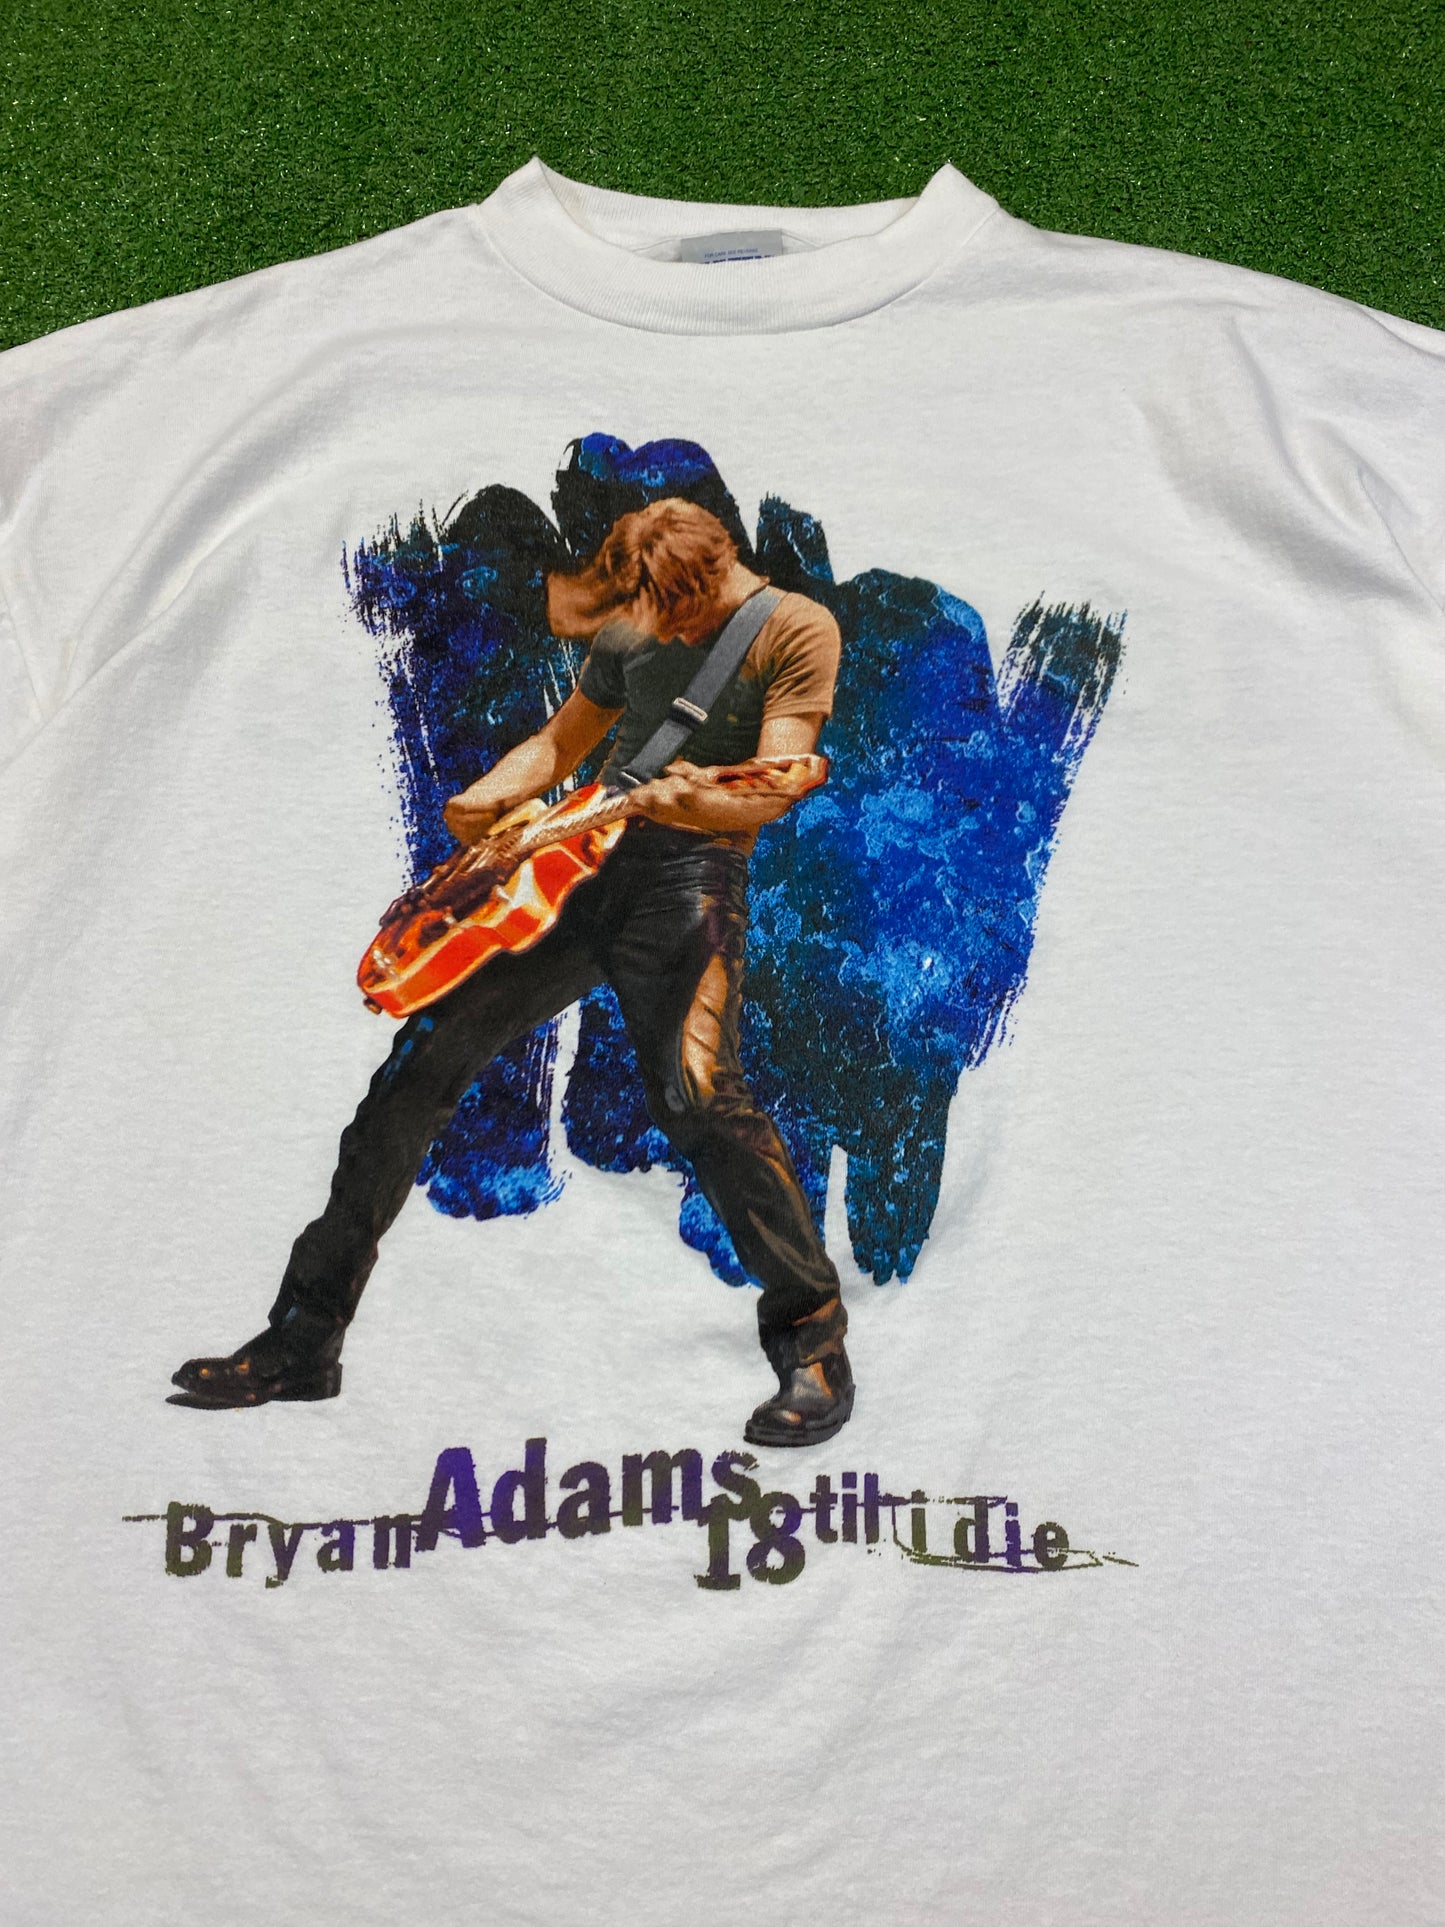 1997 Bryan Adams “18 till I die” Tour T-Shirt